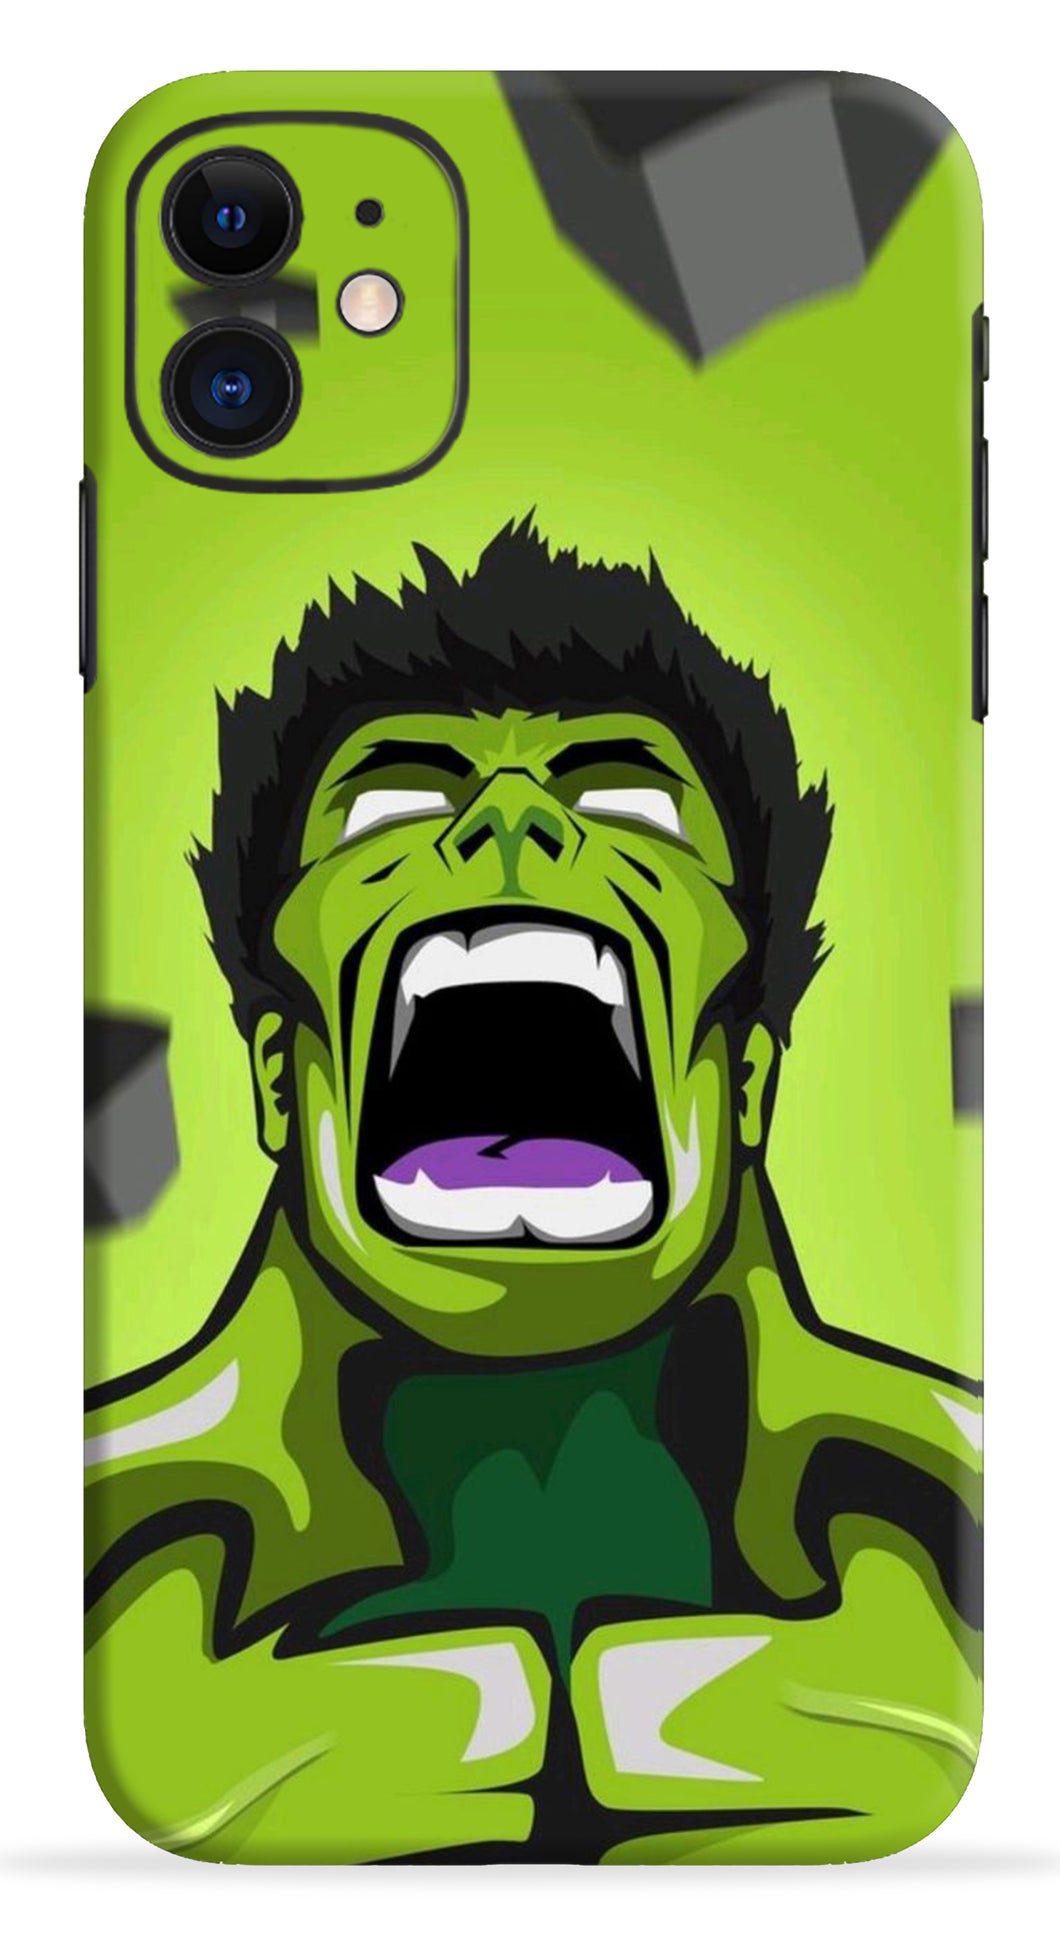 Hulk Mobile Skin Wrap